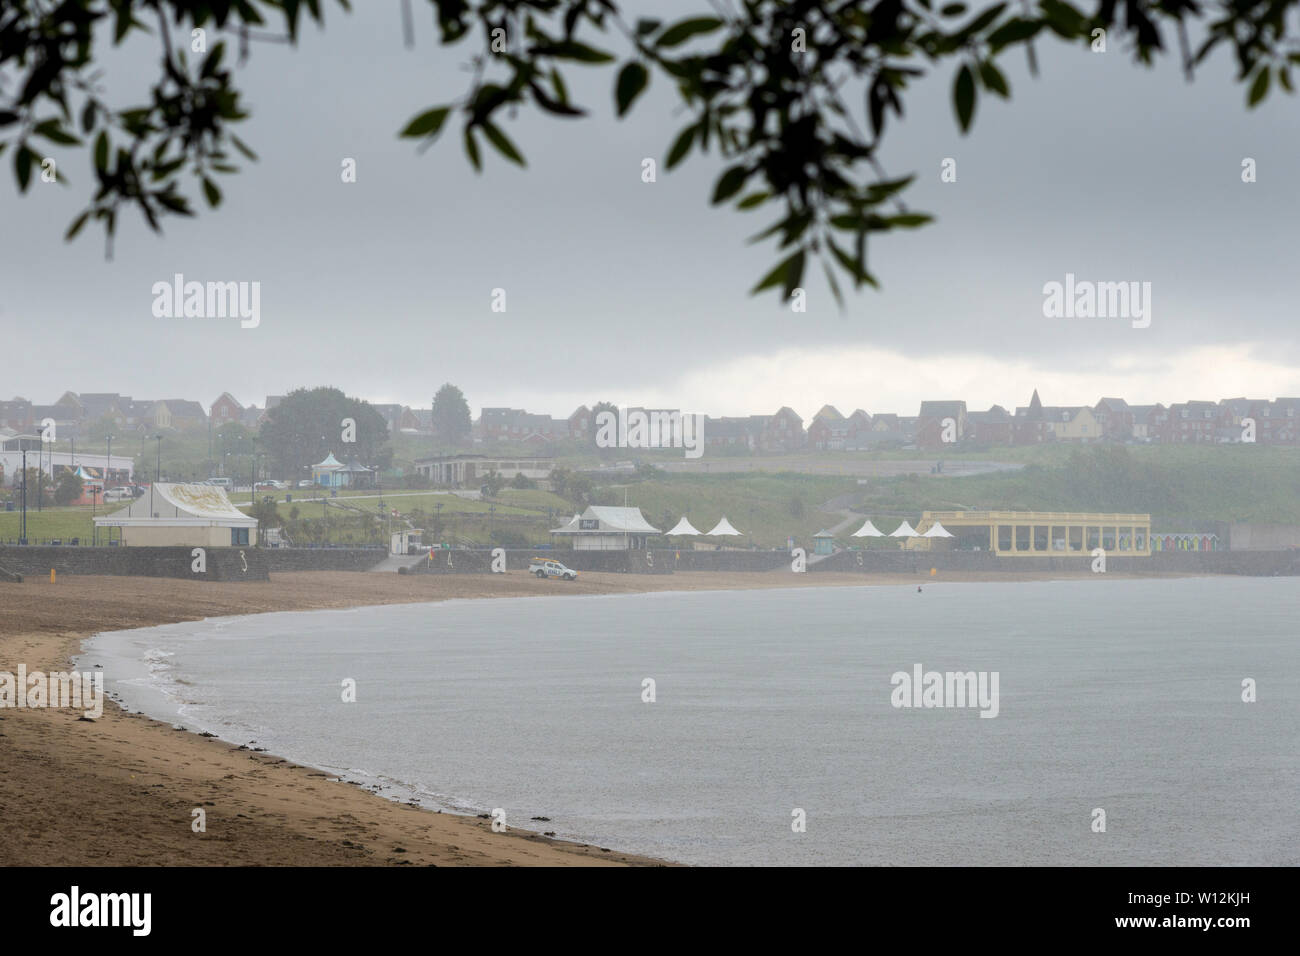 Chiome frame con una vista della spiaggia di sabbia a Barry Island che è vuoto, ma per un bagnino distanti van, durante un acquazzone pesante. Foto Stock